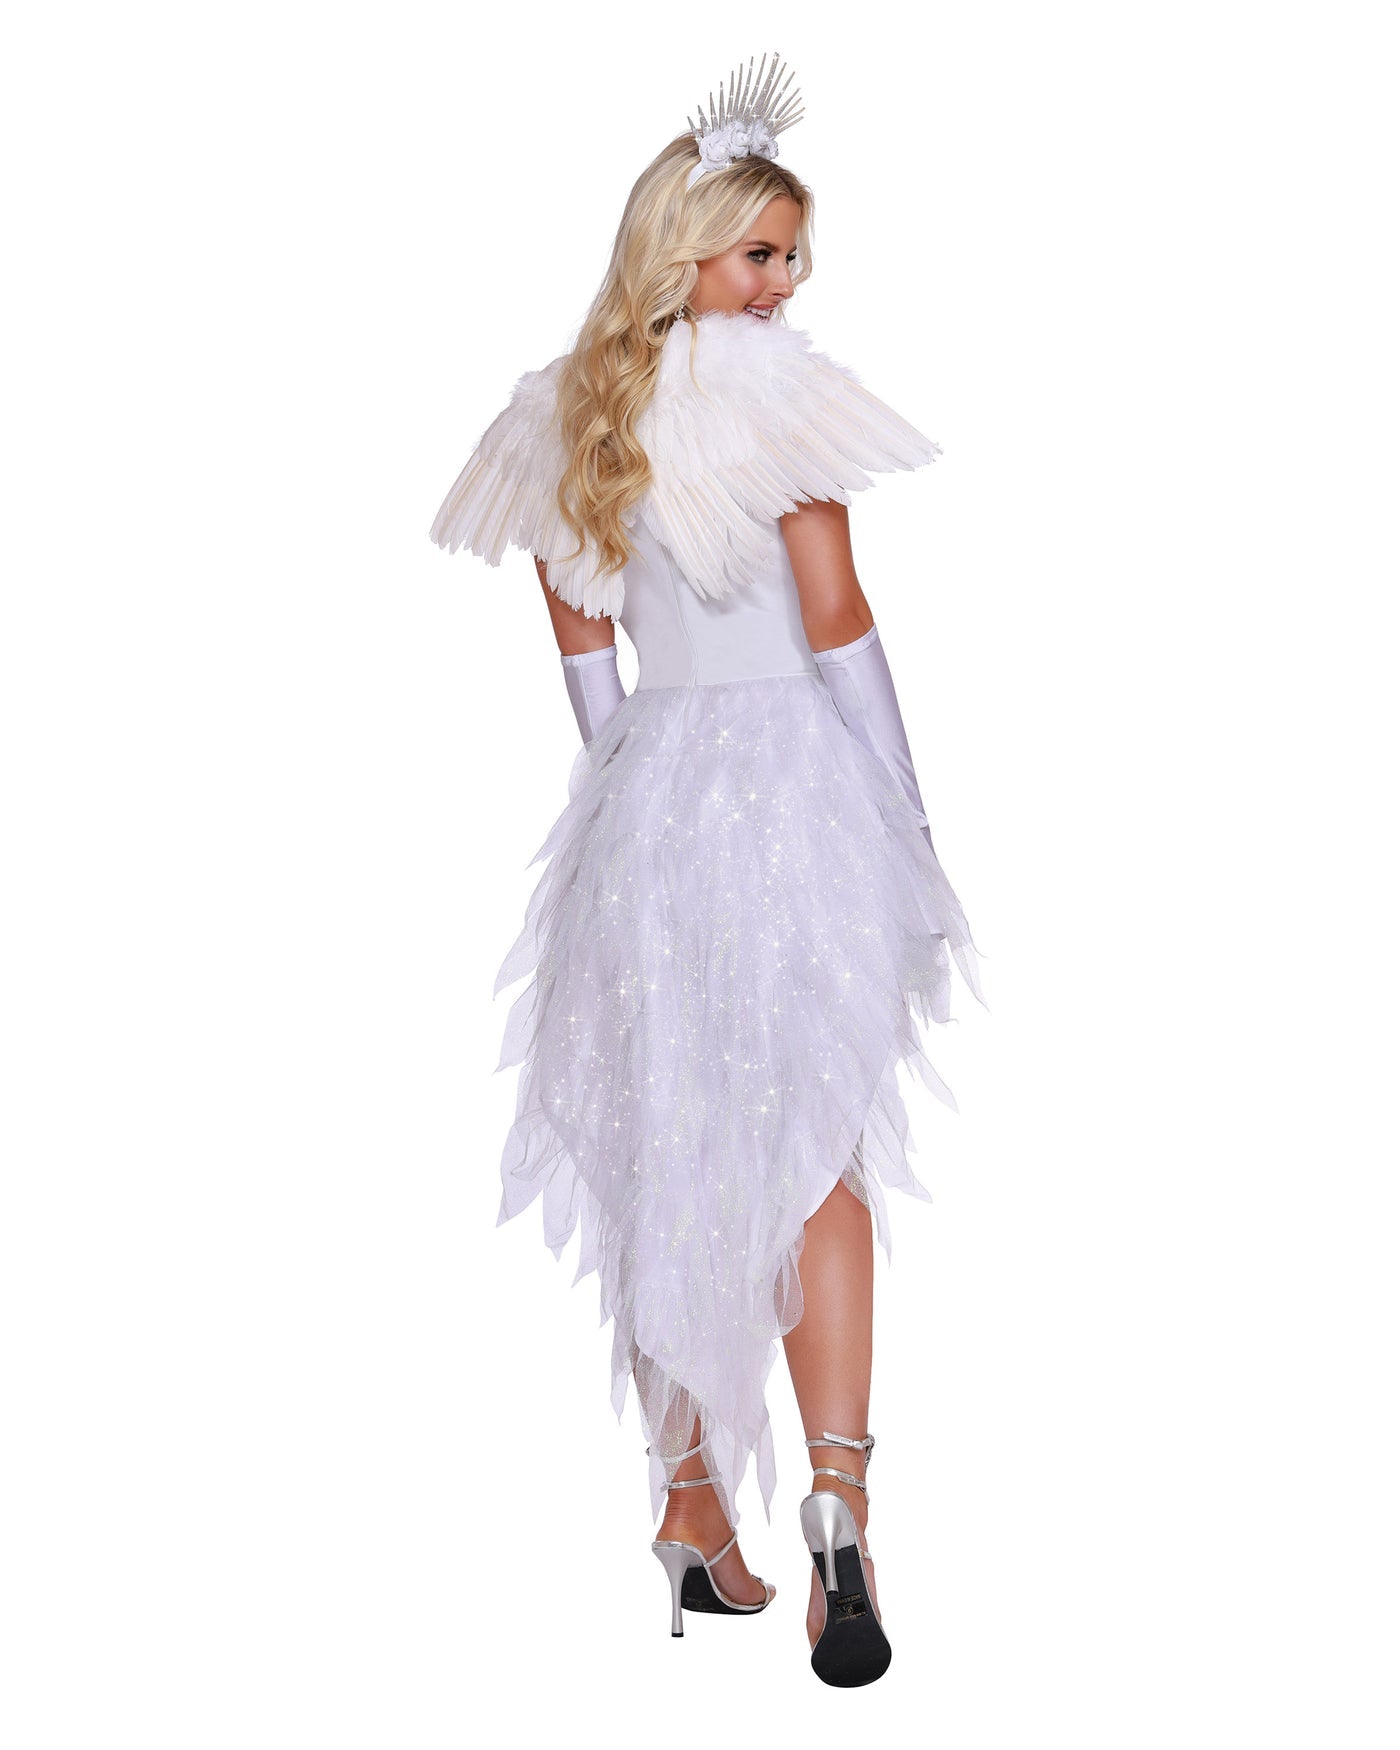 Angel Beauty Women's Costume